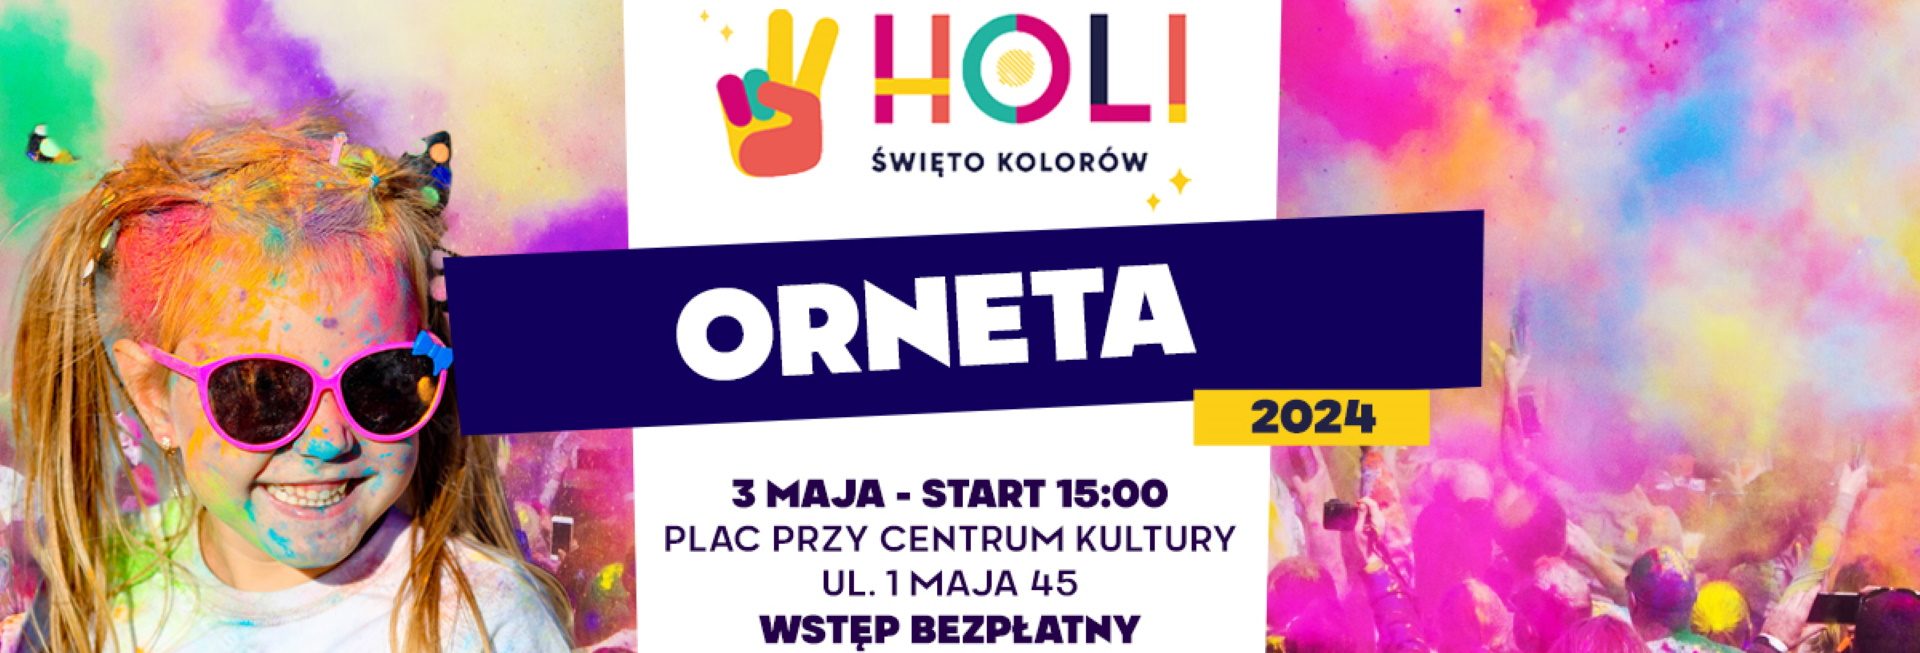 Plakat zapraszający w piątek 3 maja 2024 r. do Ornety na Holi Święto Kolorów Orneta 2024.